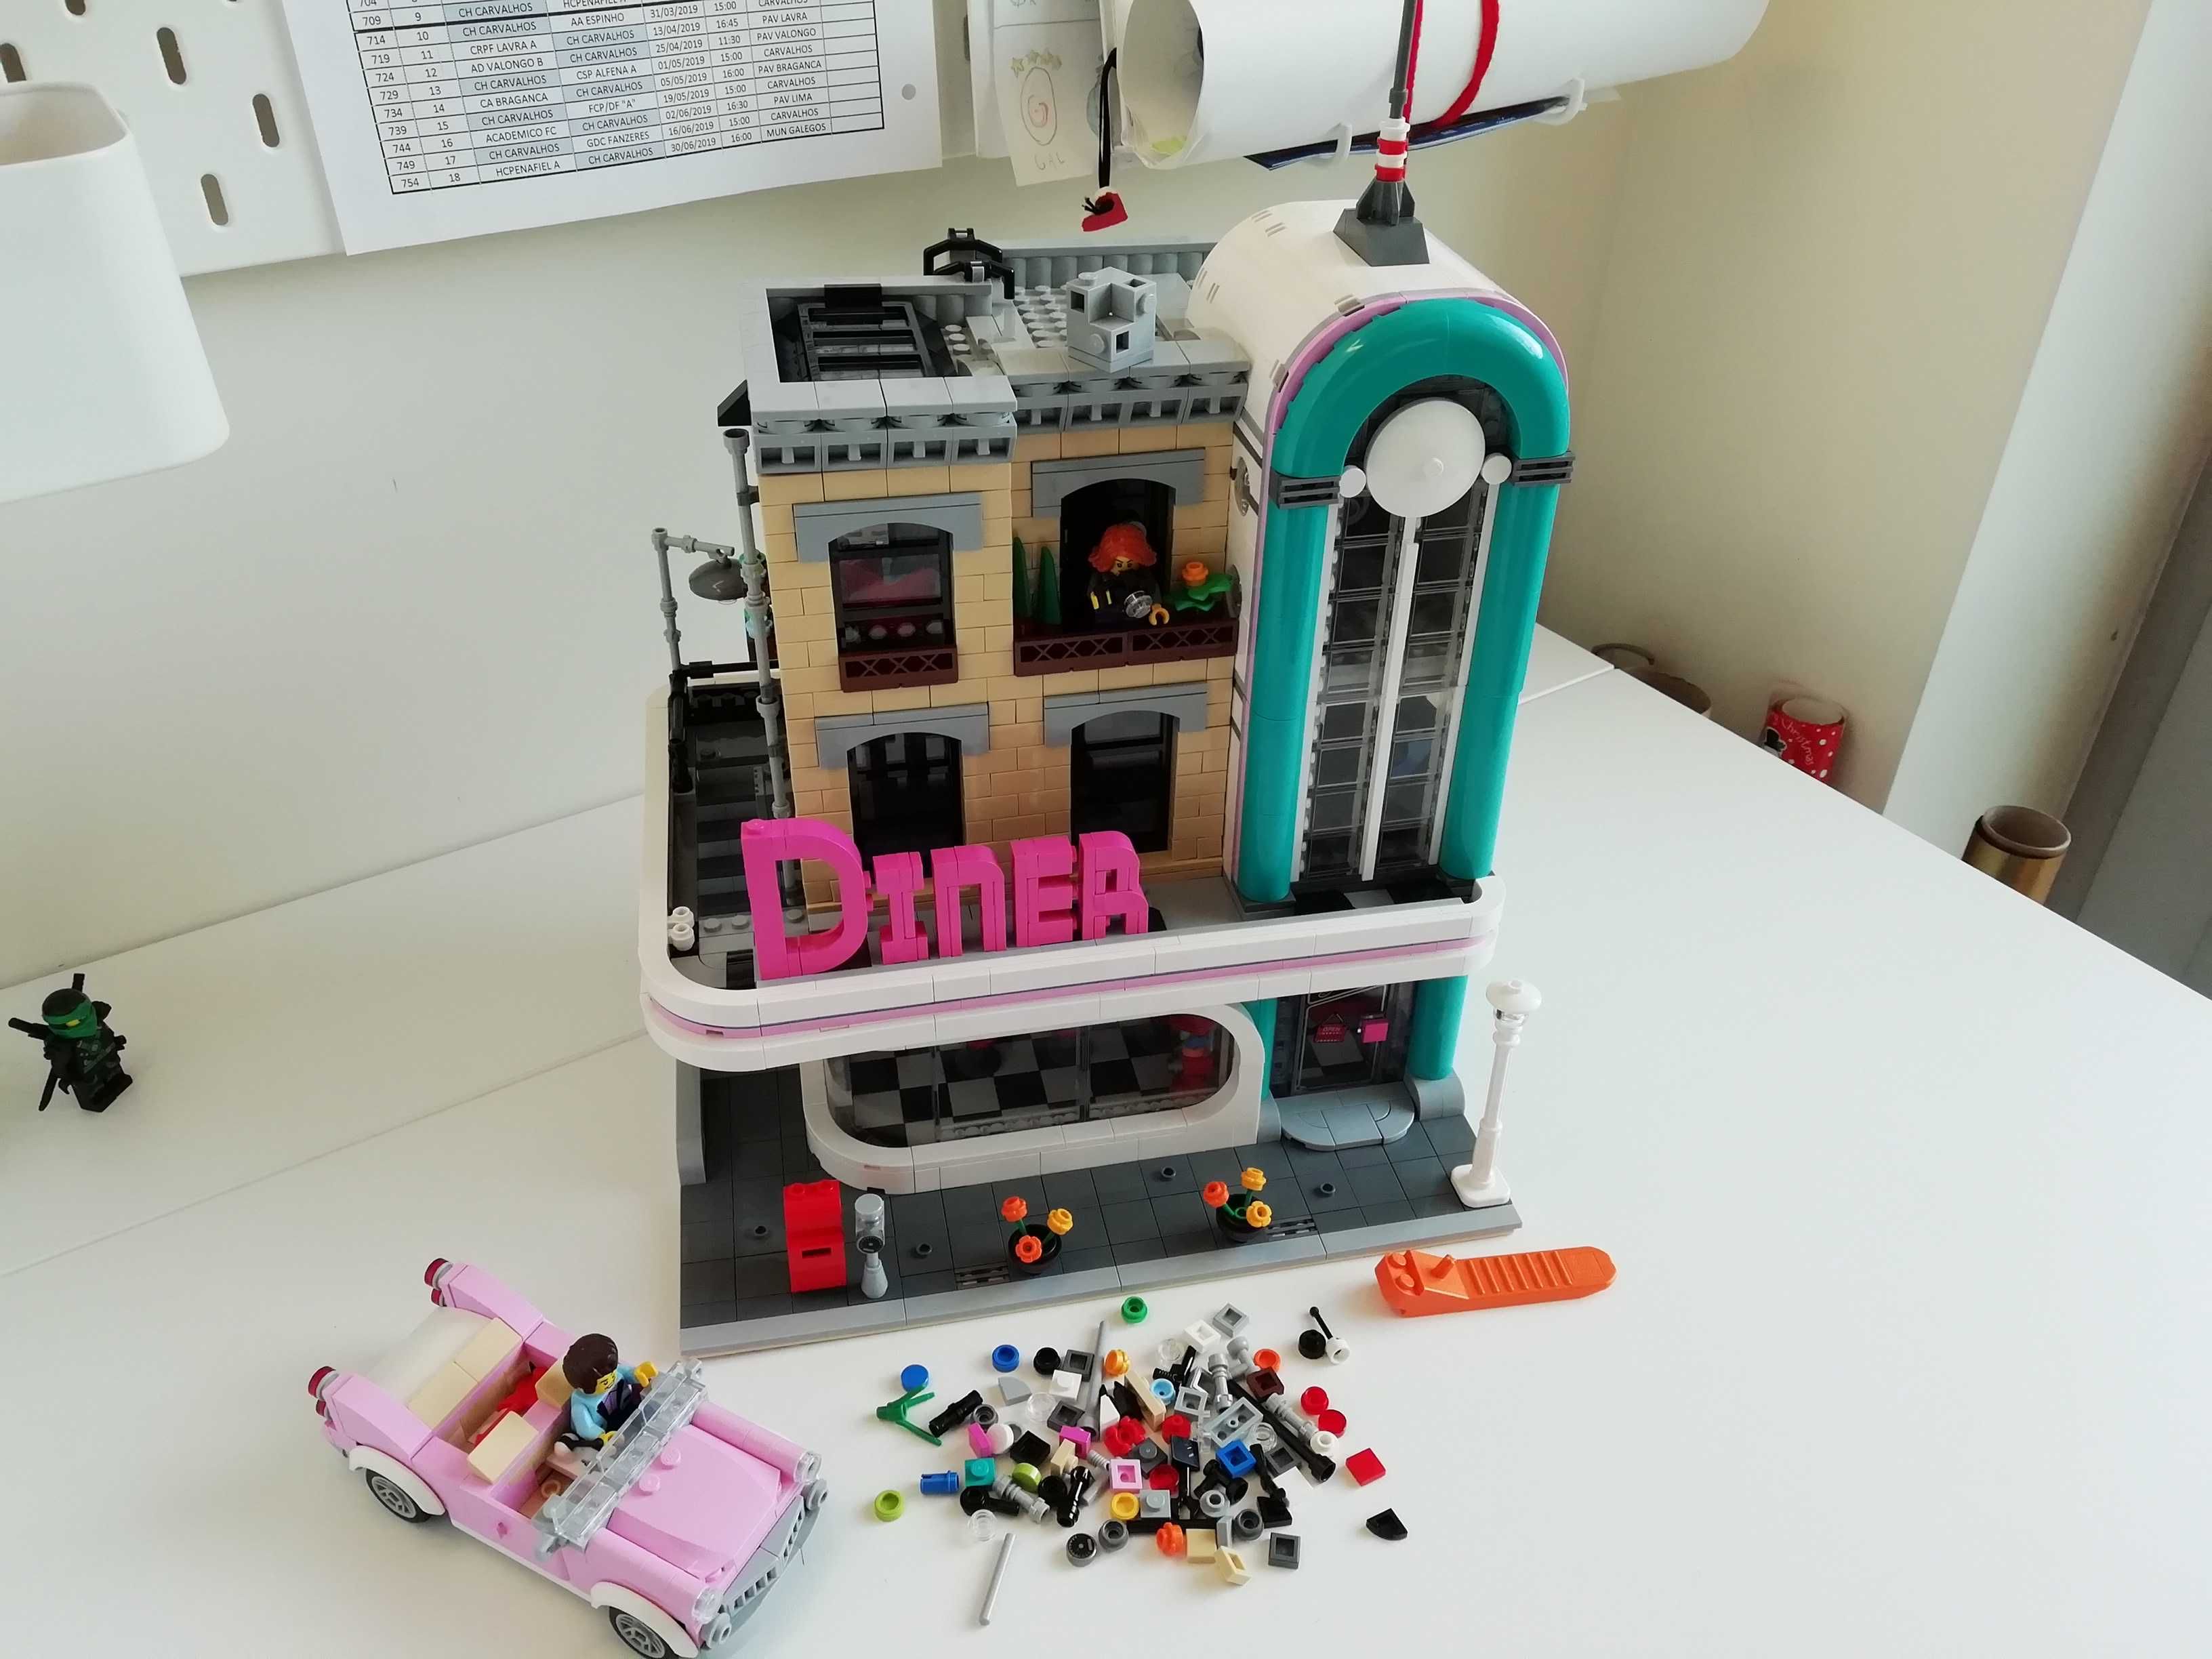 Descubra a Magia da Construção - Serviço de Compra e Montagem de LEGO